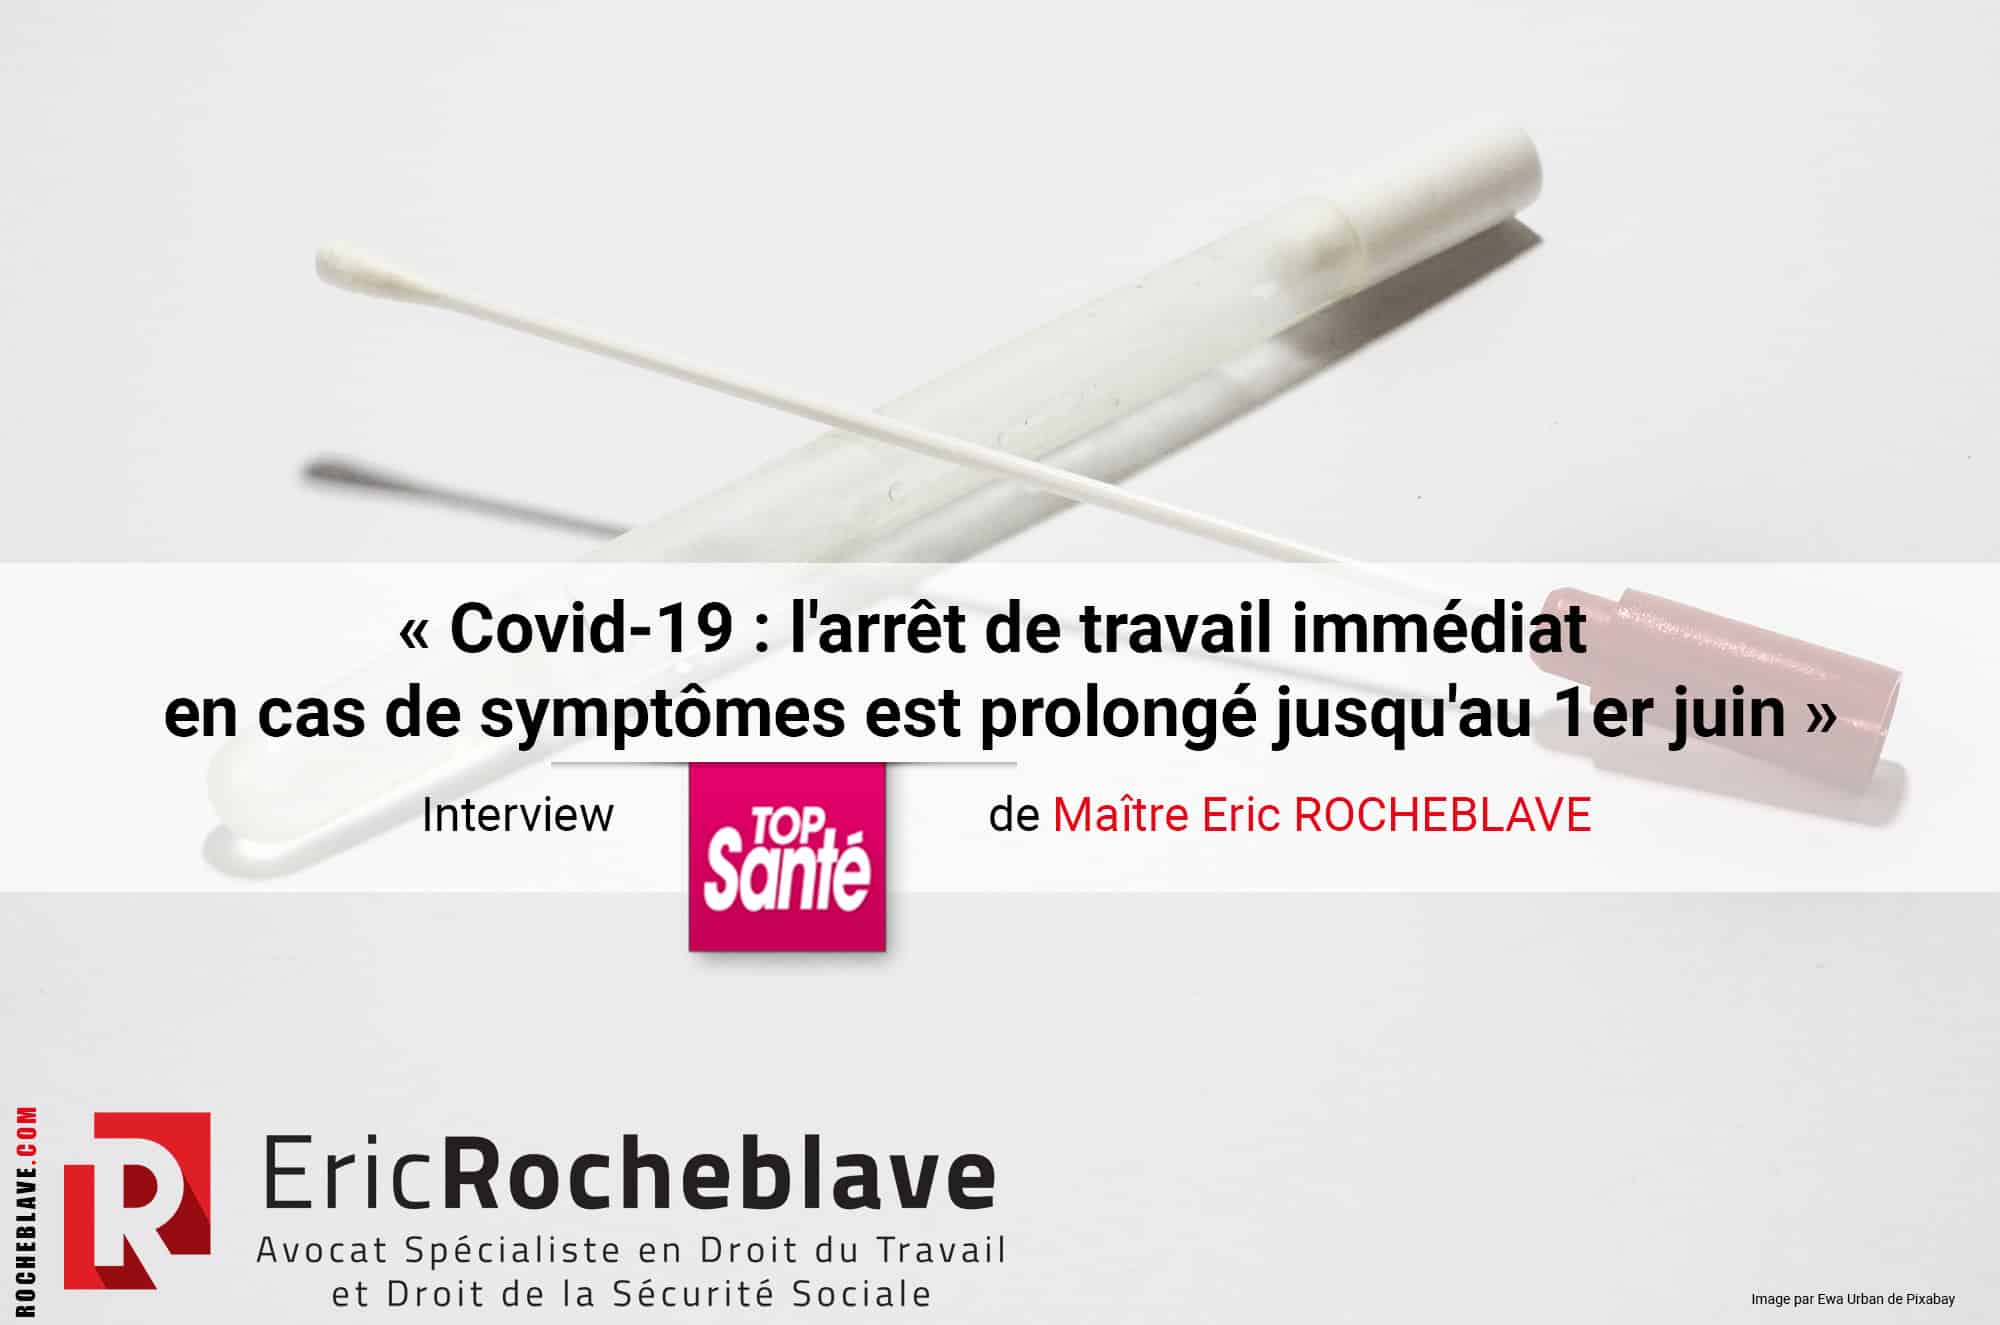 « Covid-19 : l'arrêt de travail immédiat en cas de symptômes est prolongé jusqu'au 1er juin » Interview Top Santé de Maître Eric ROCHEBLAVE